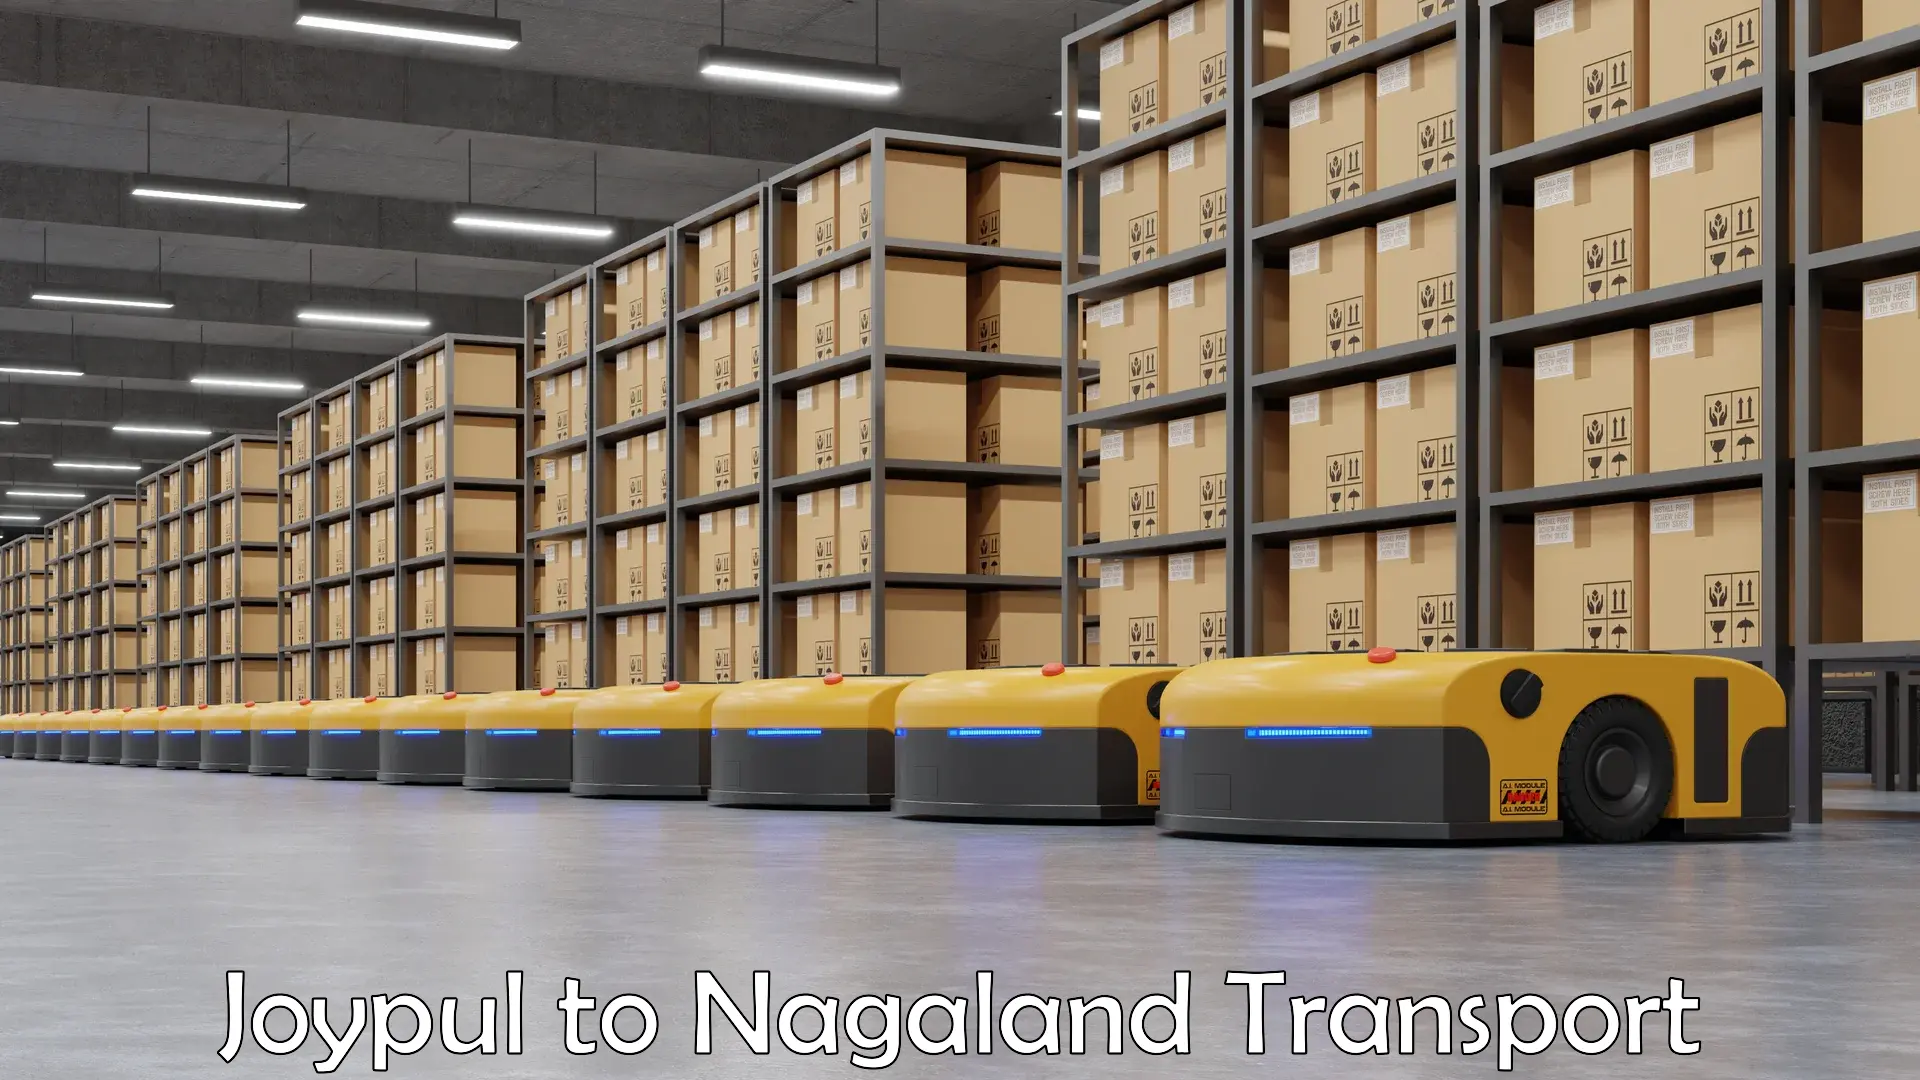 Nearest transport service Joypul to NIT Nagaland